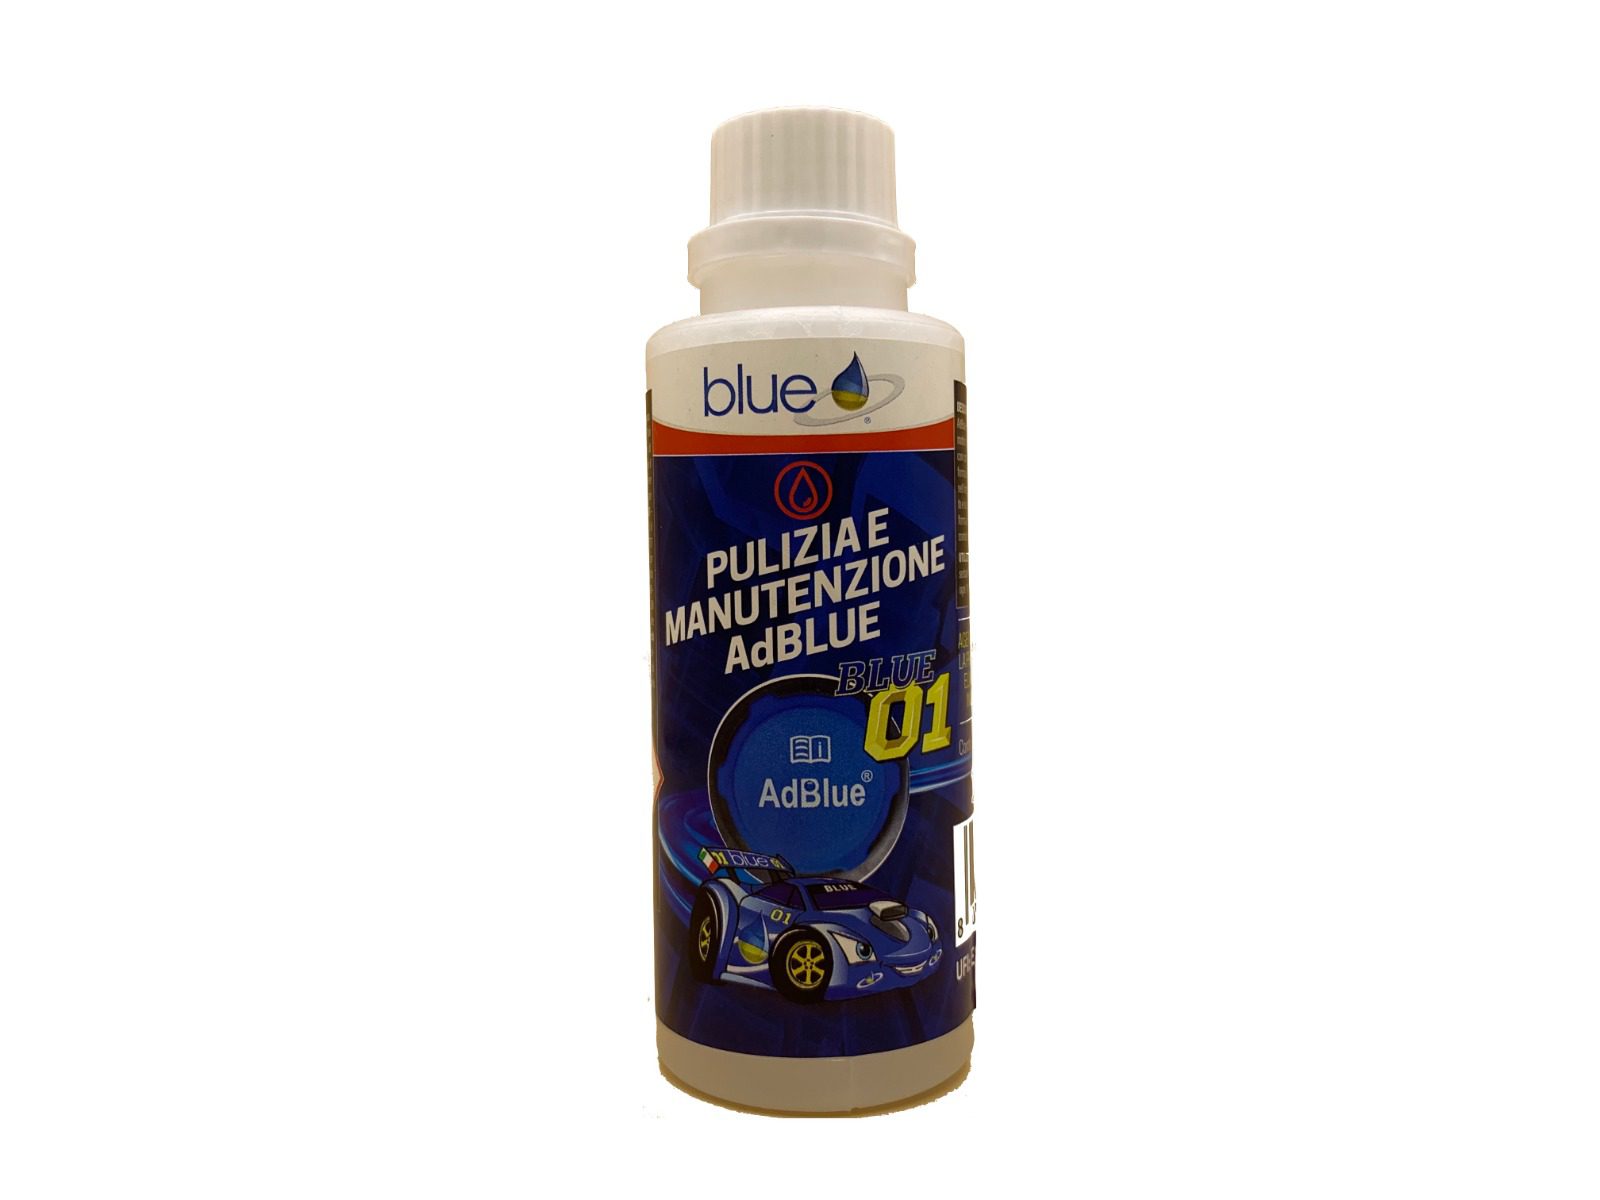 Pulizia e manutenzione AdBlue - Additivi Blue